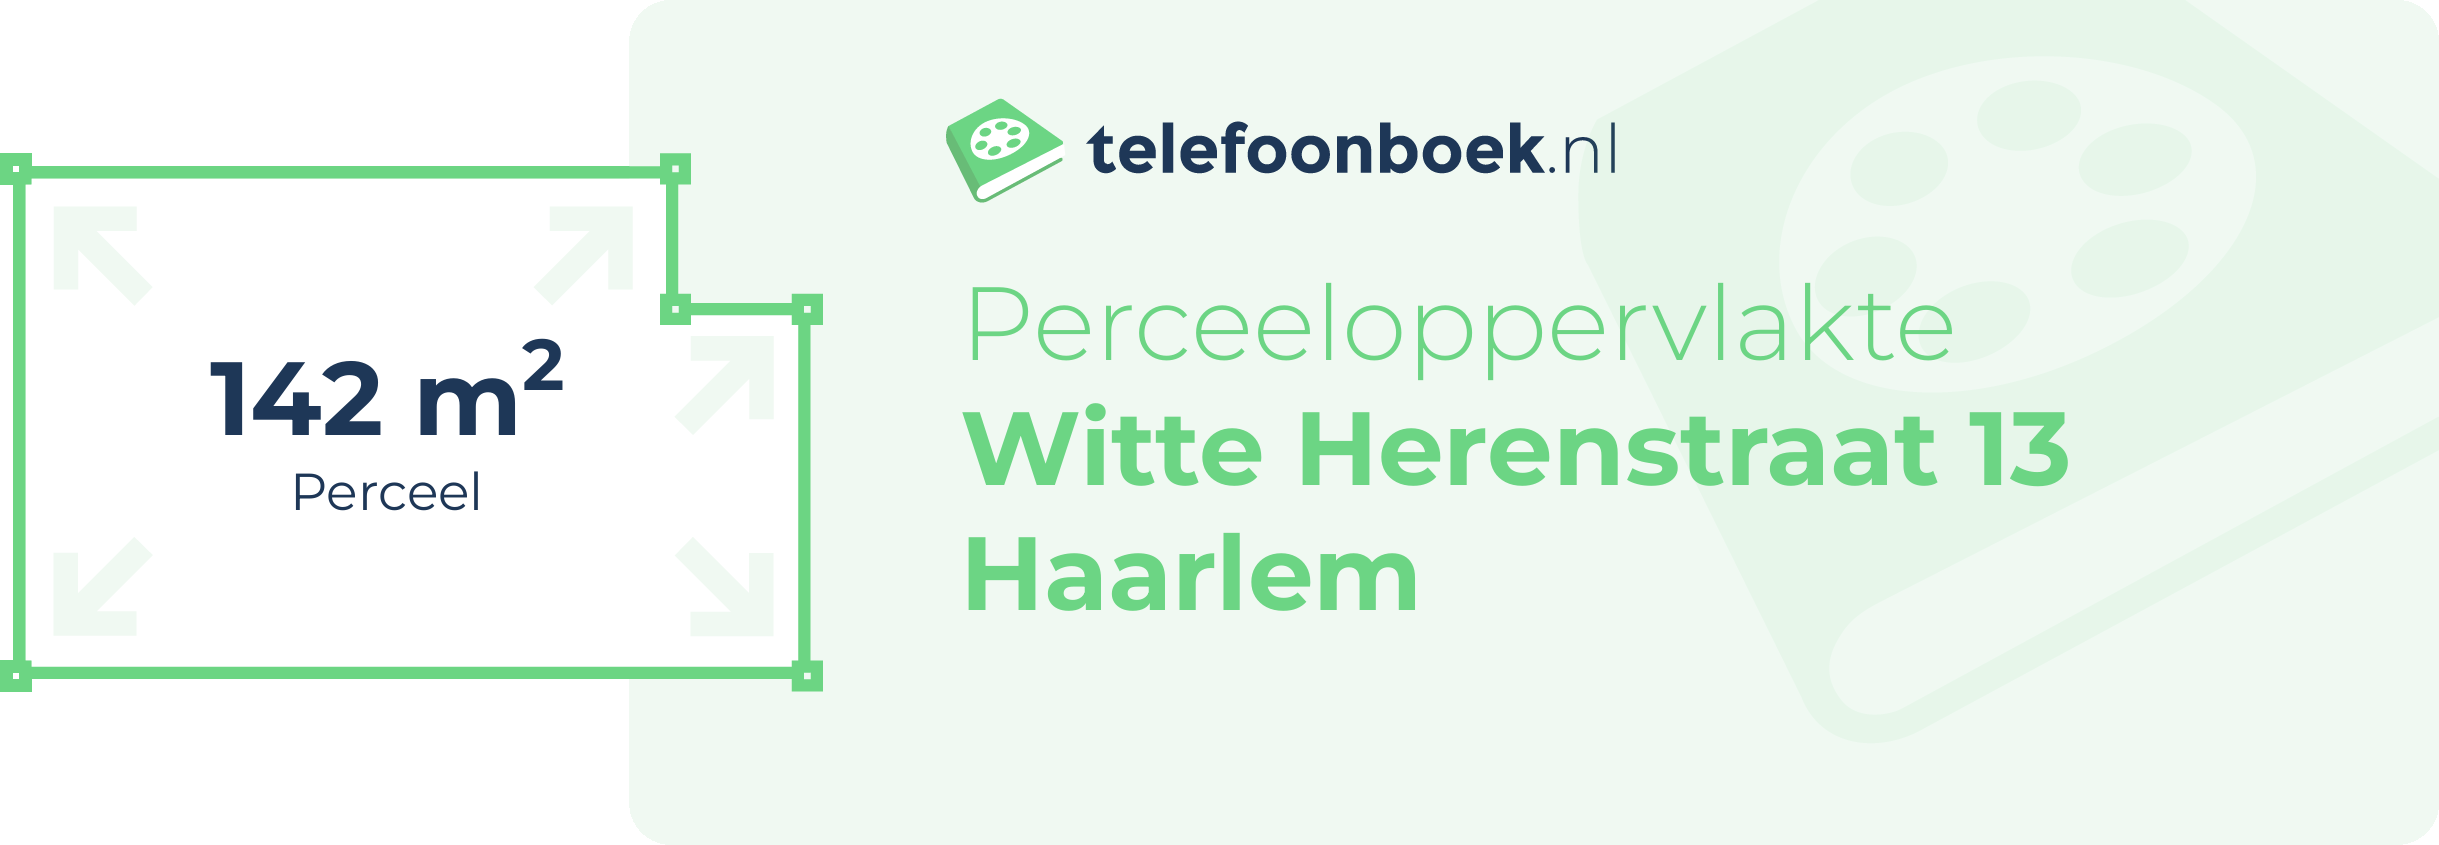 Perceeloppervlakte Witte Herenstraat 13 Haarlem